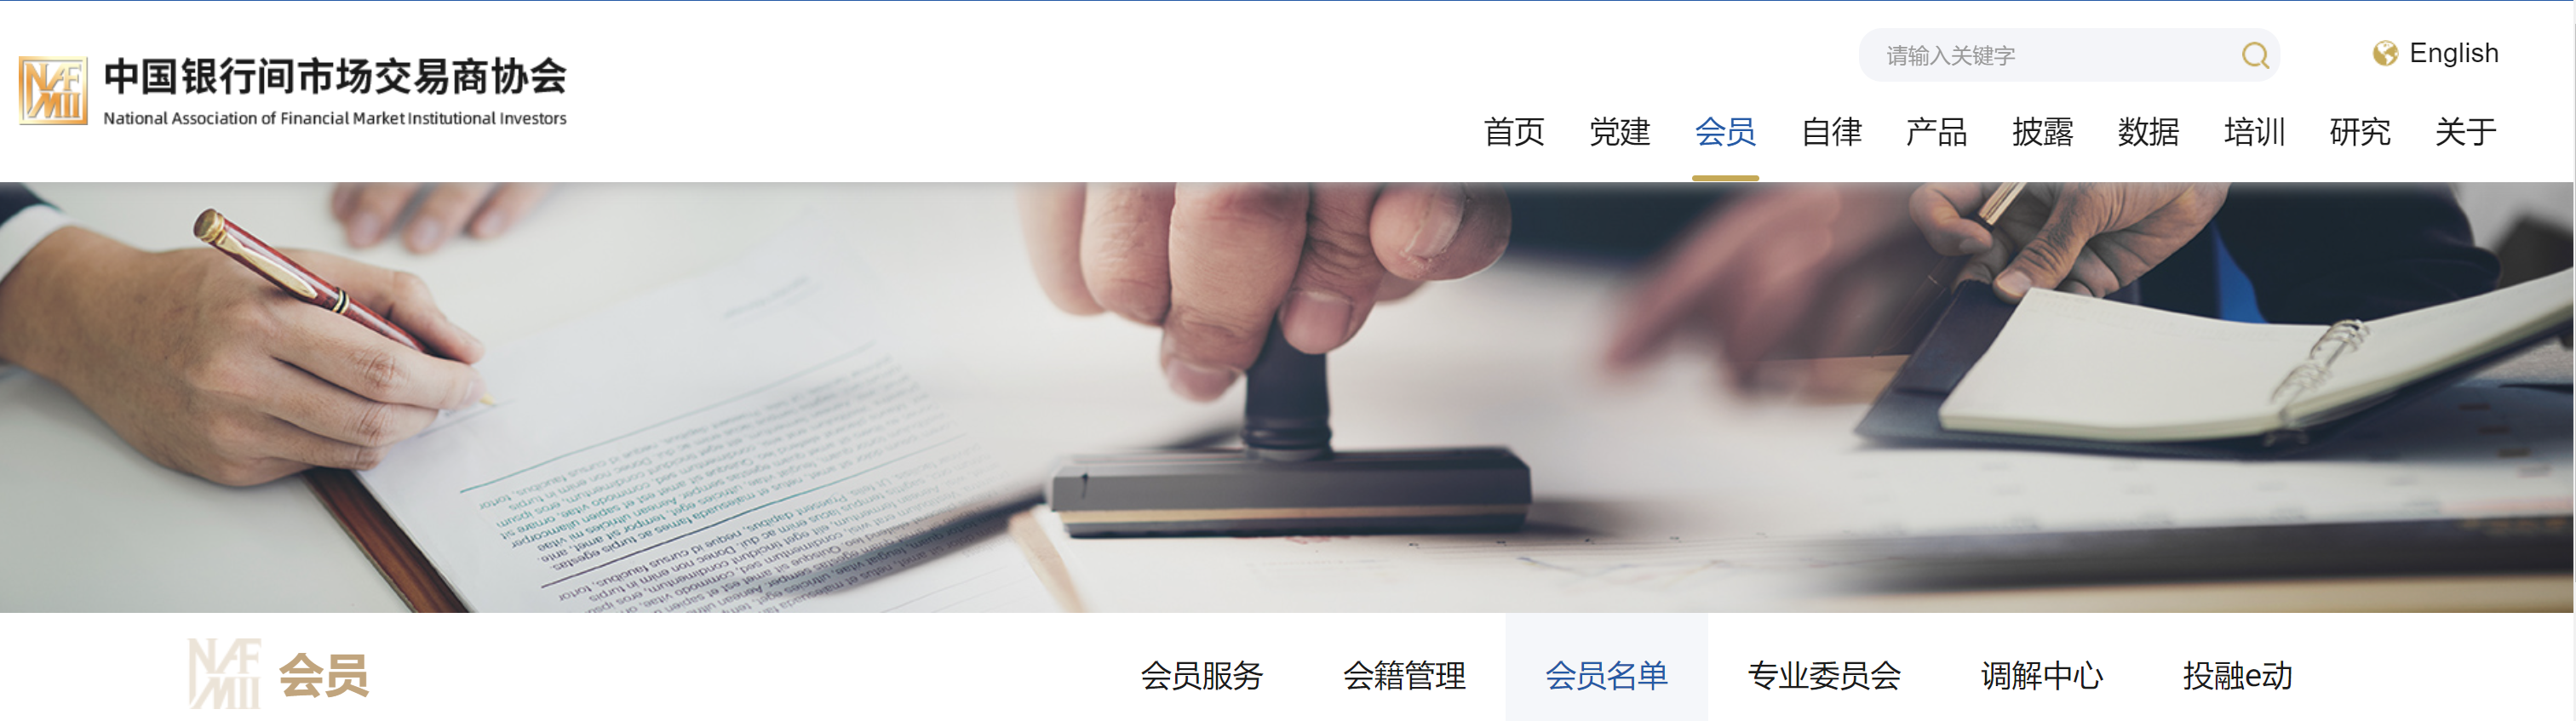 堂堂第八名   中国银行间交易商协会会计师事务所会员发布